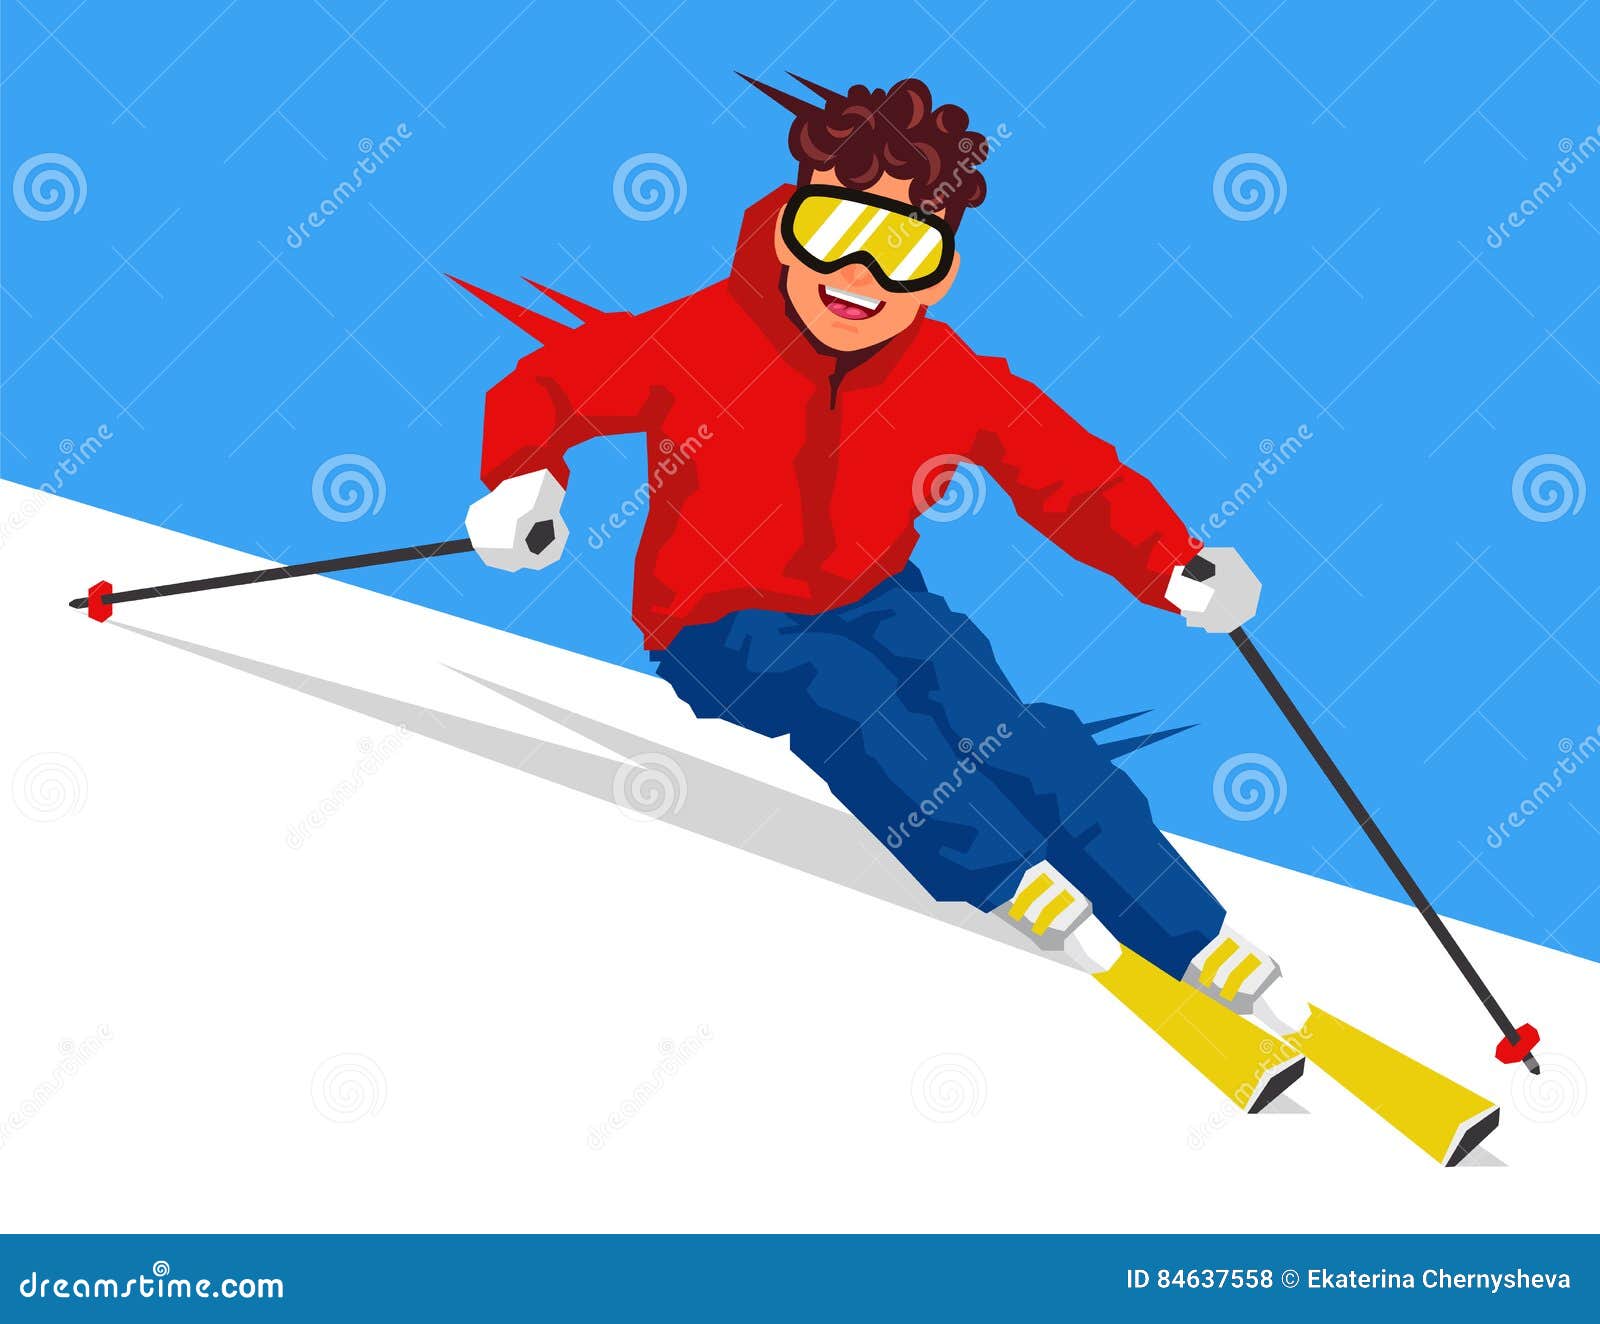 Лыжник скатывается. Лыжник катится с горы. Лыжник катится с горы на лыжах. Лыжник спускетс я с горки. Человек скатывается с горы на лыжах.